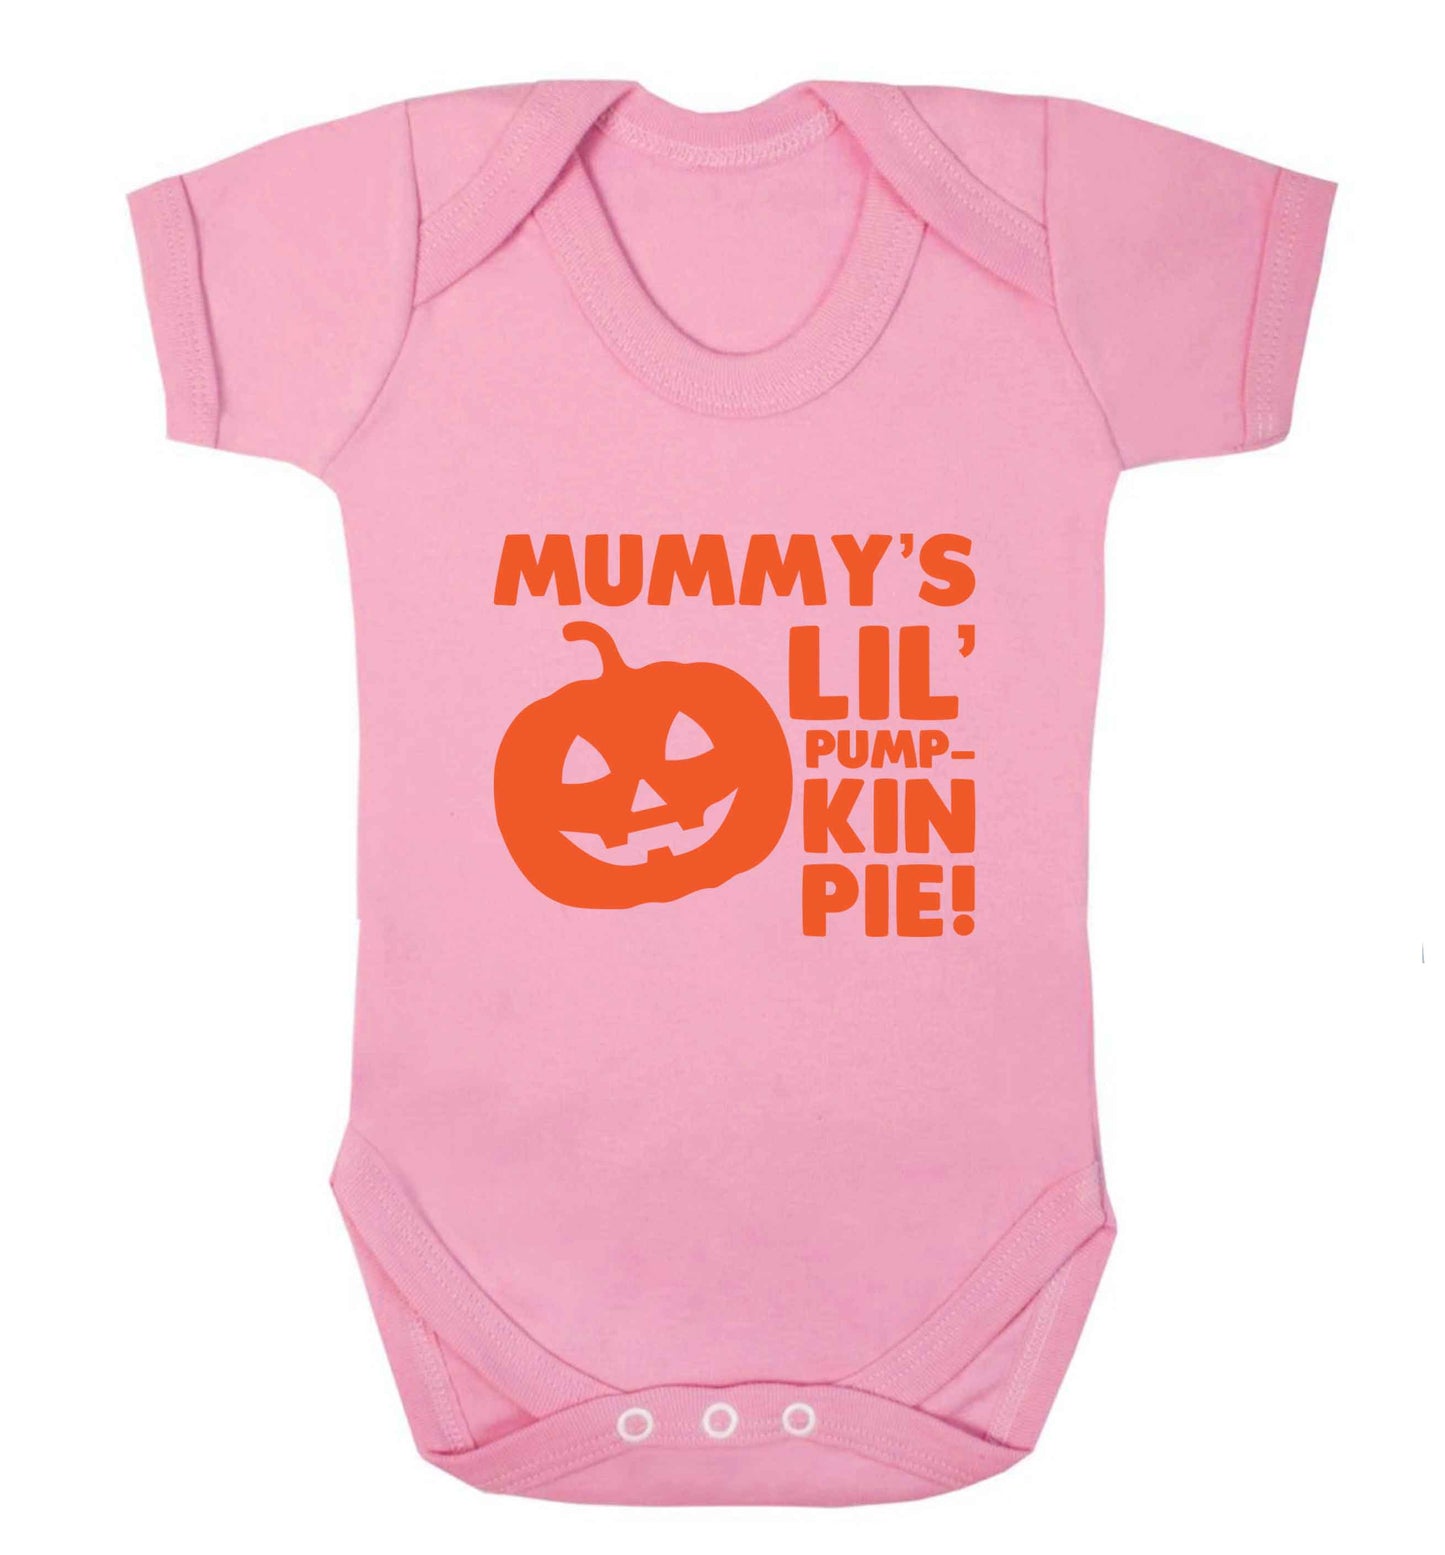 Mummy's lil' pumpkin pie baby vest pale pink 18-24 months